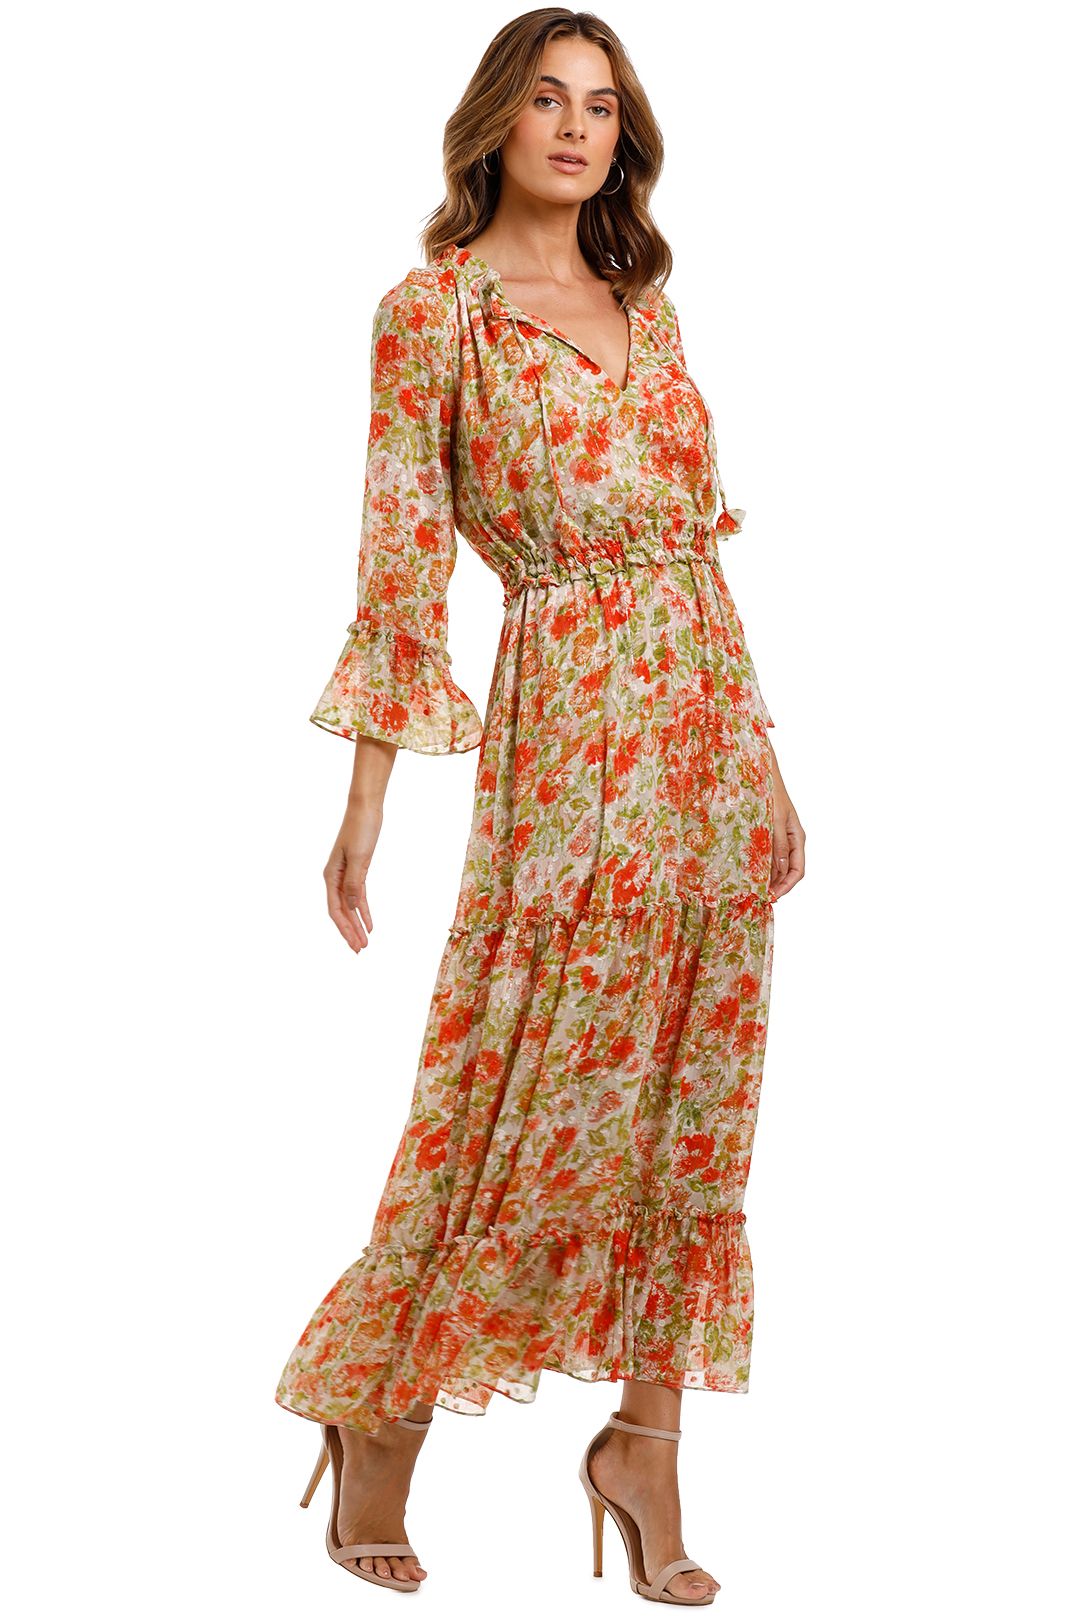 Misa LA Lucinda Dress v neck floral print